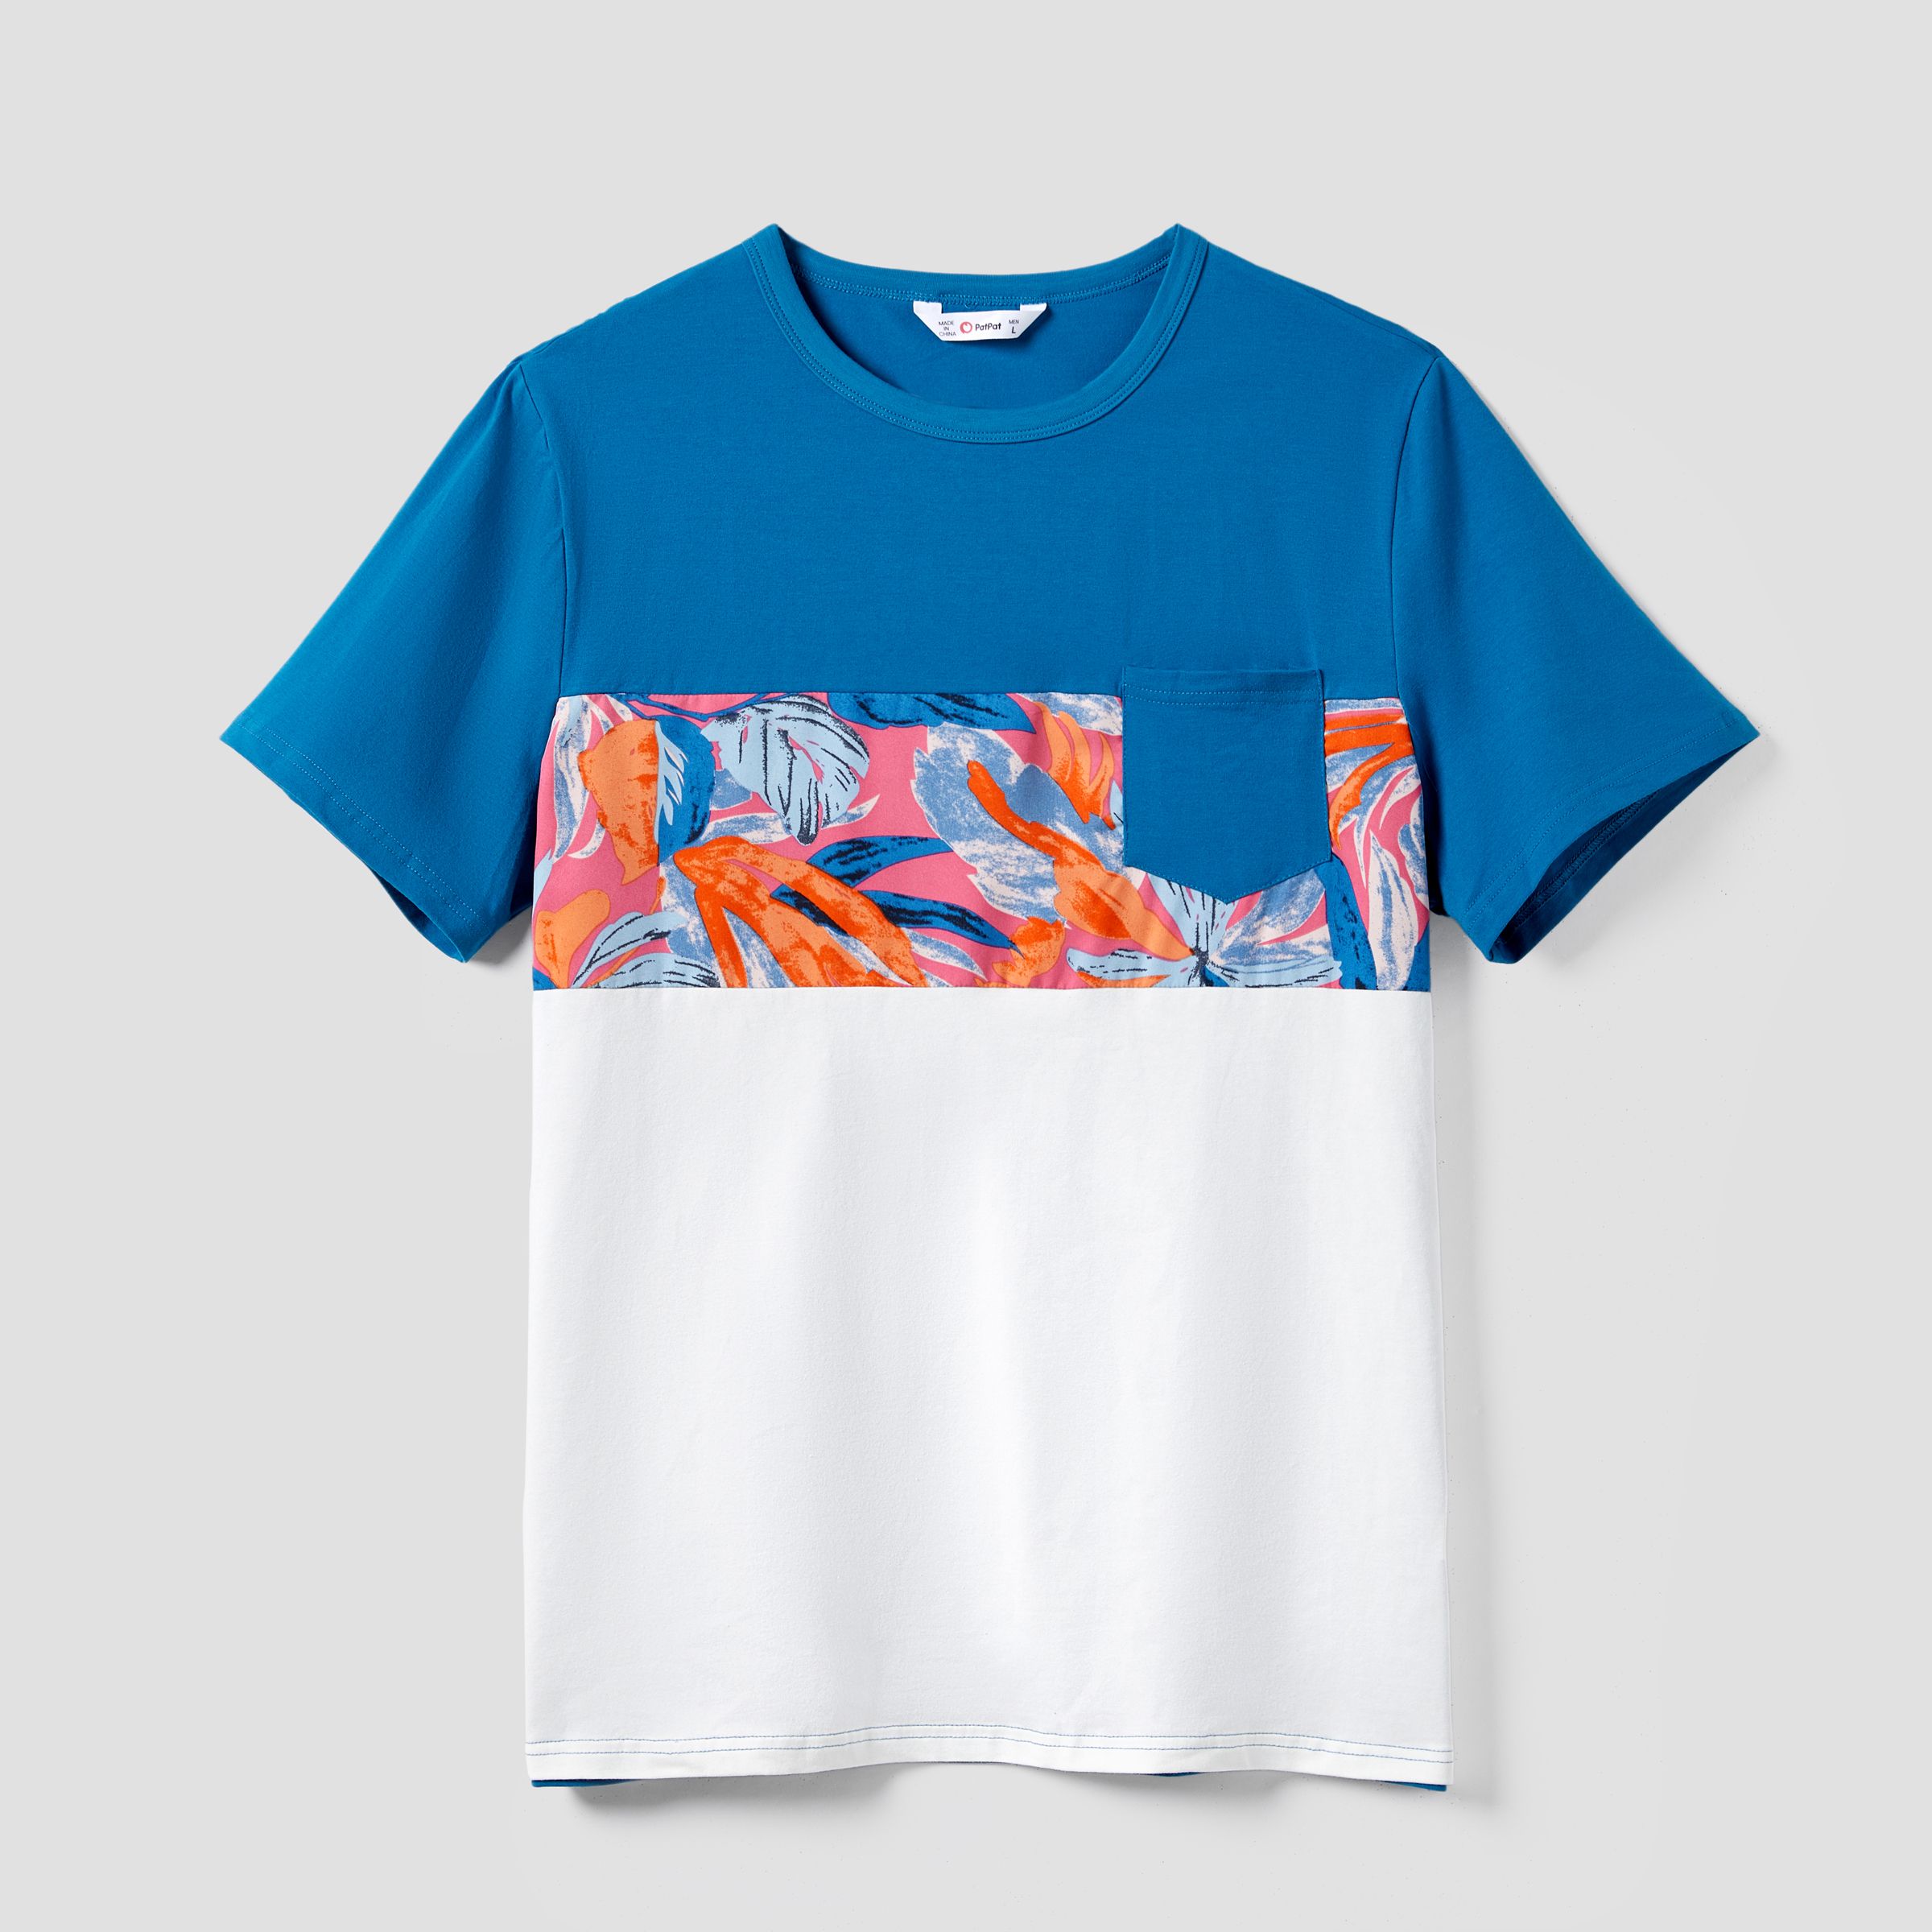 Famille Assortie Colorblock T-shirt Et Floral Wrap Top Strap Dress Ensembles